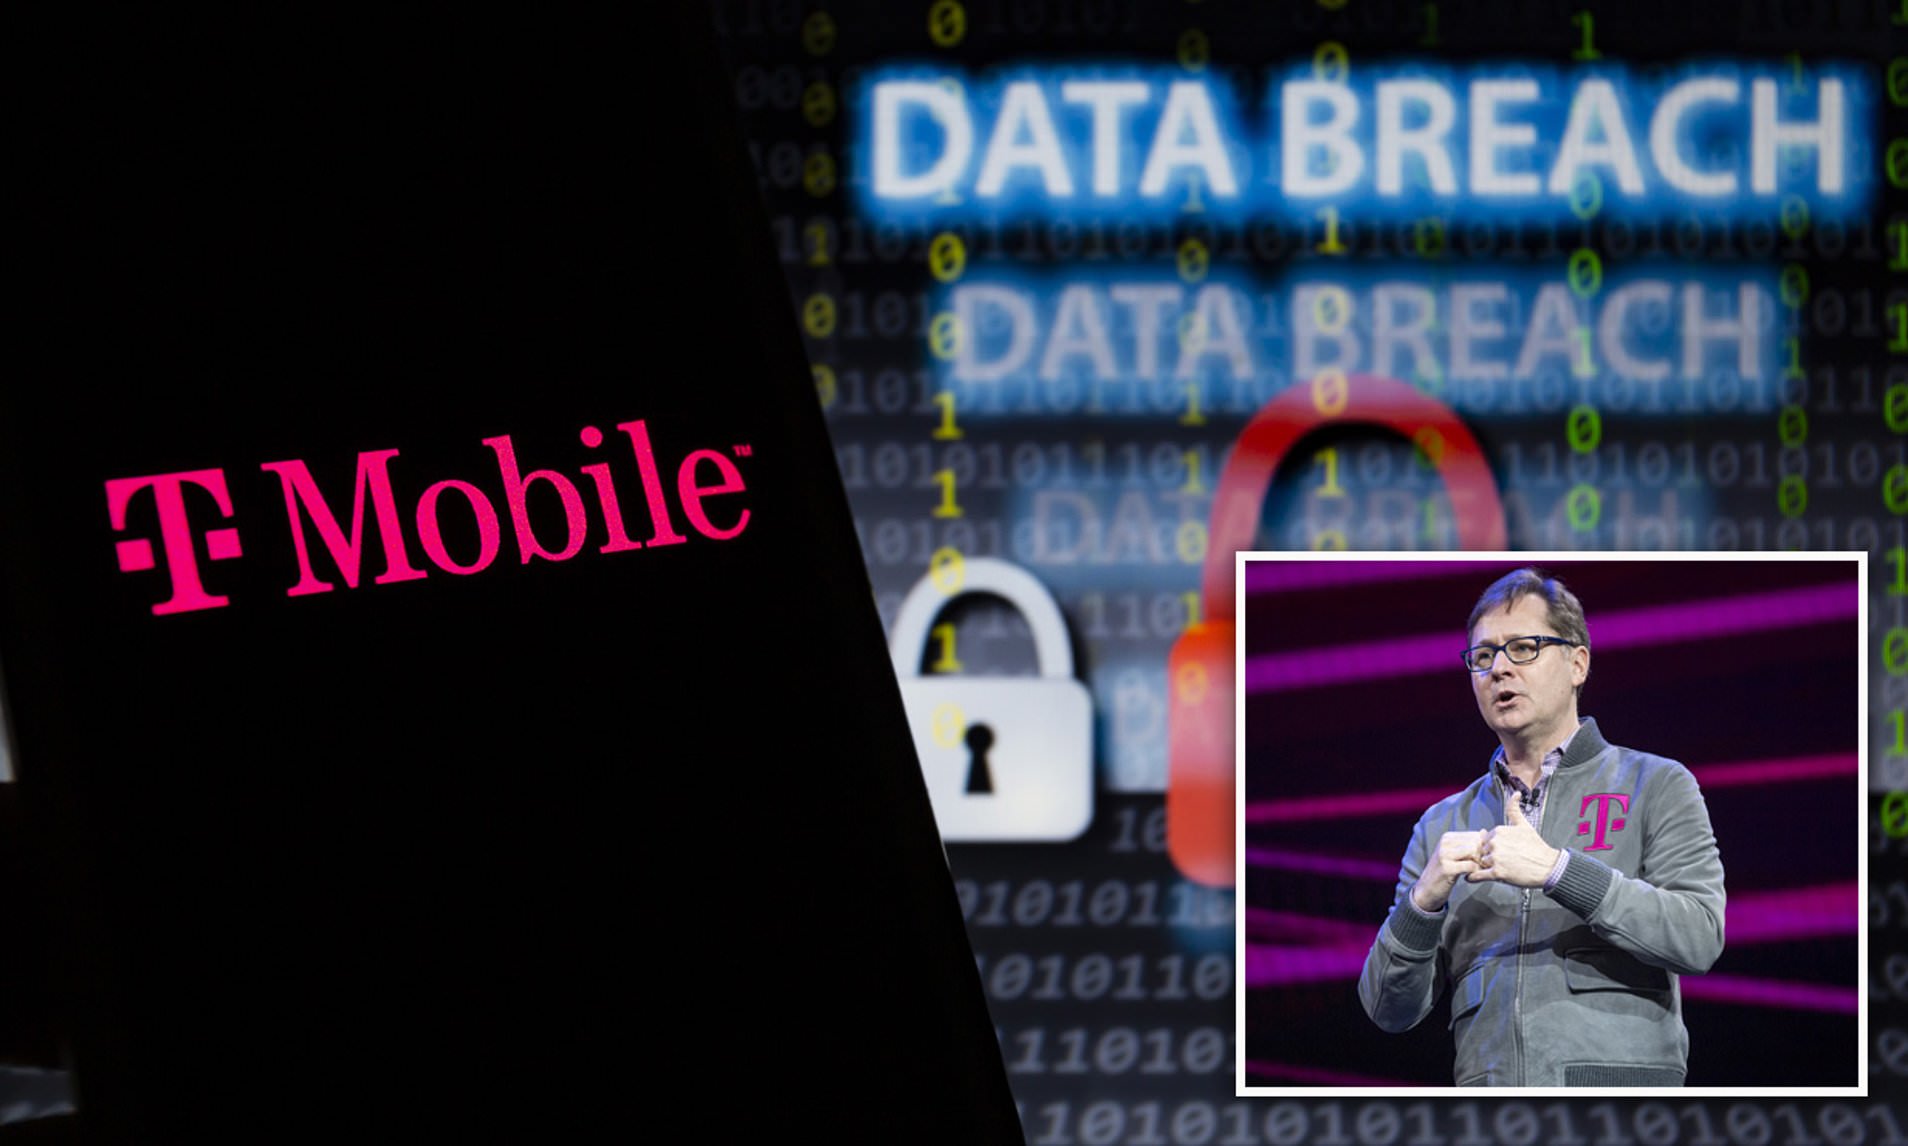 T-mobile data breach